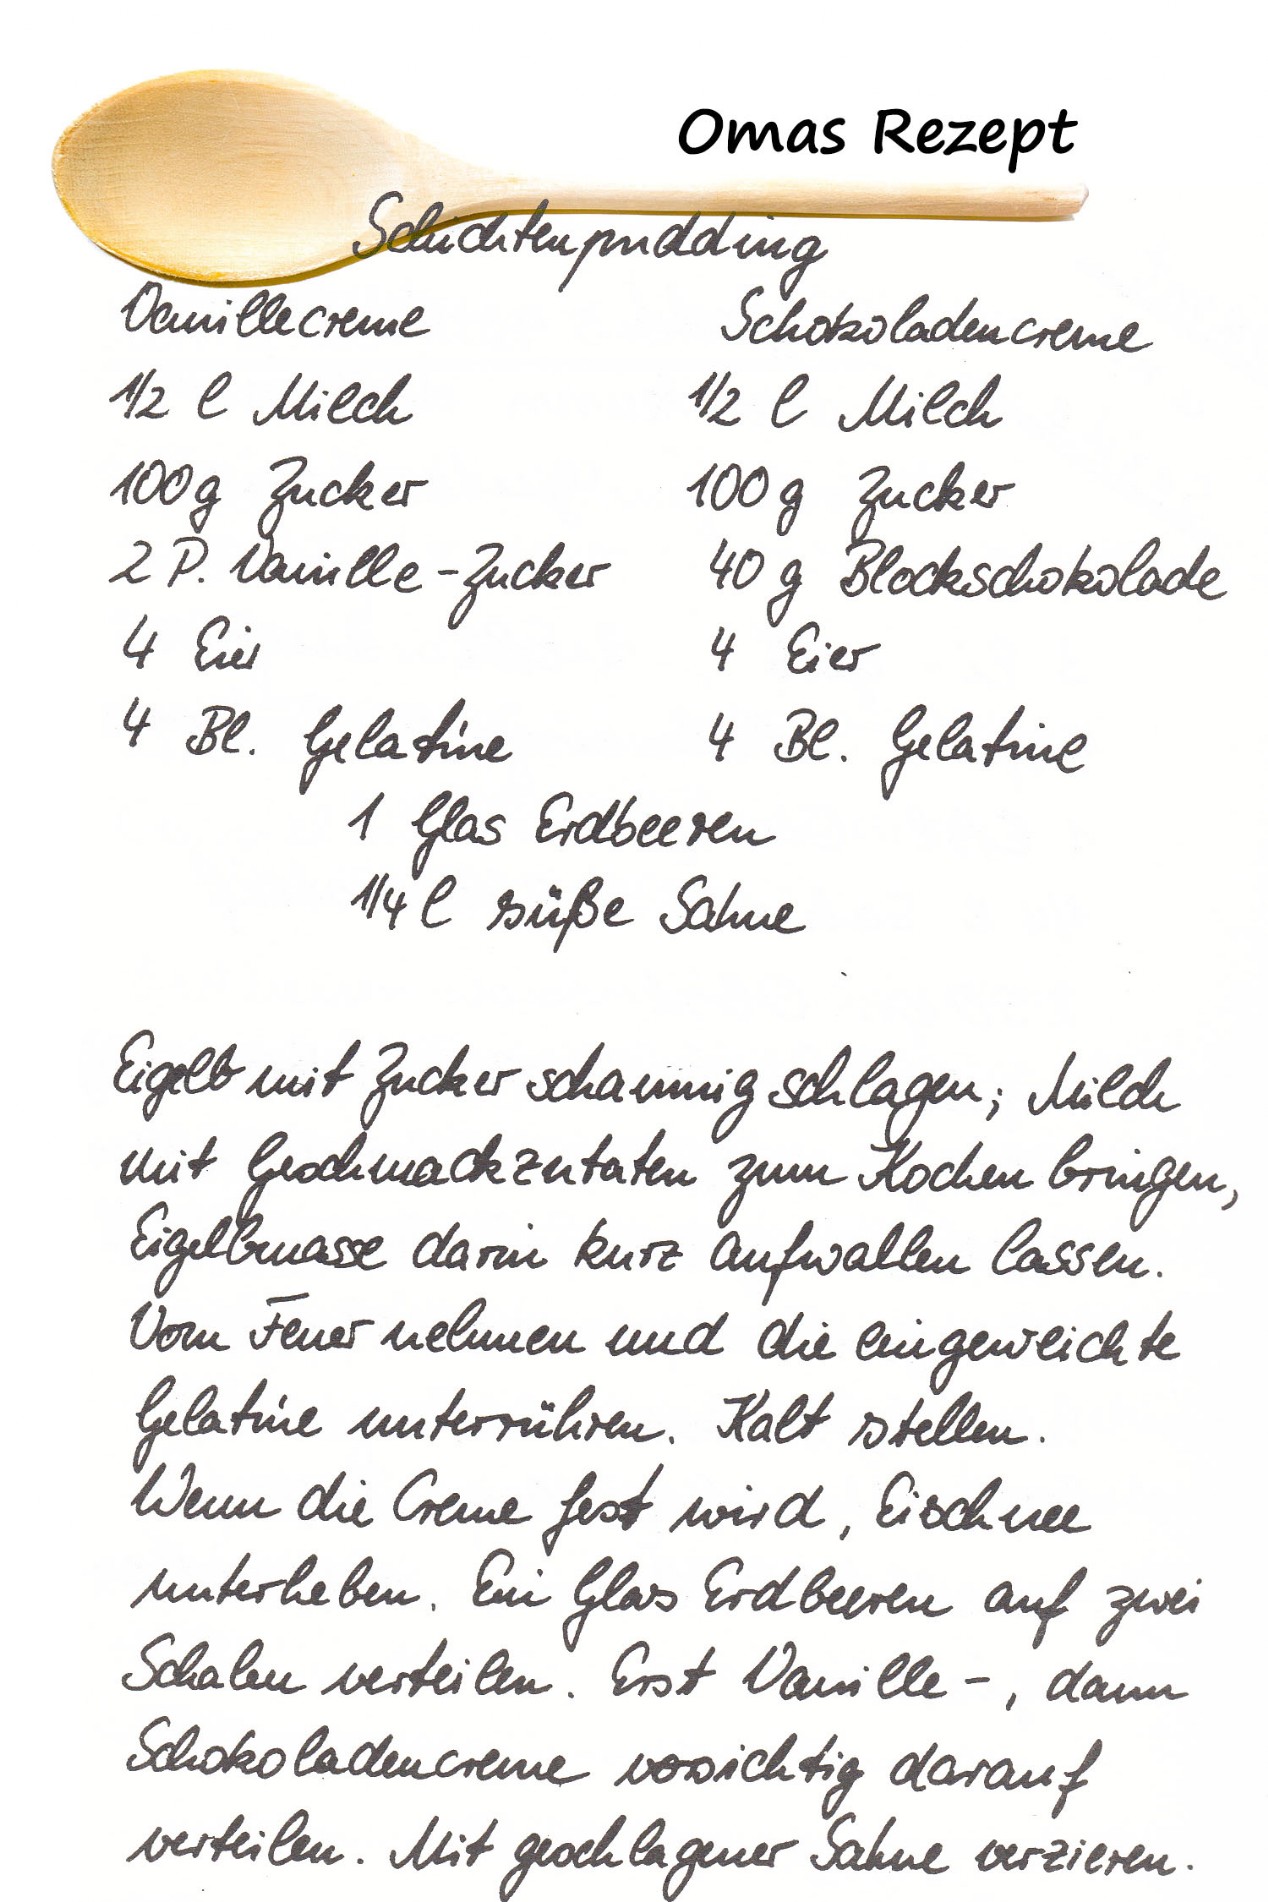 Omas Kochbuch, Desserts und Süßspeisen - Schichtenpudding